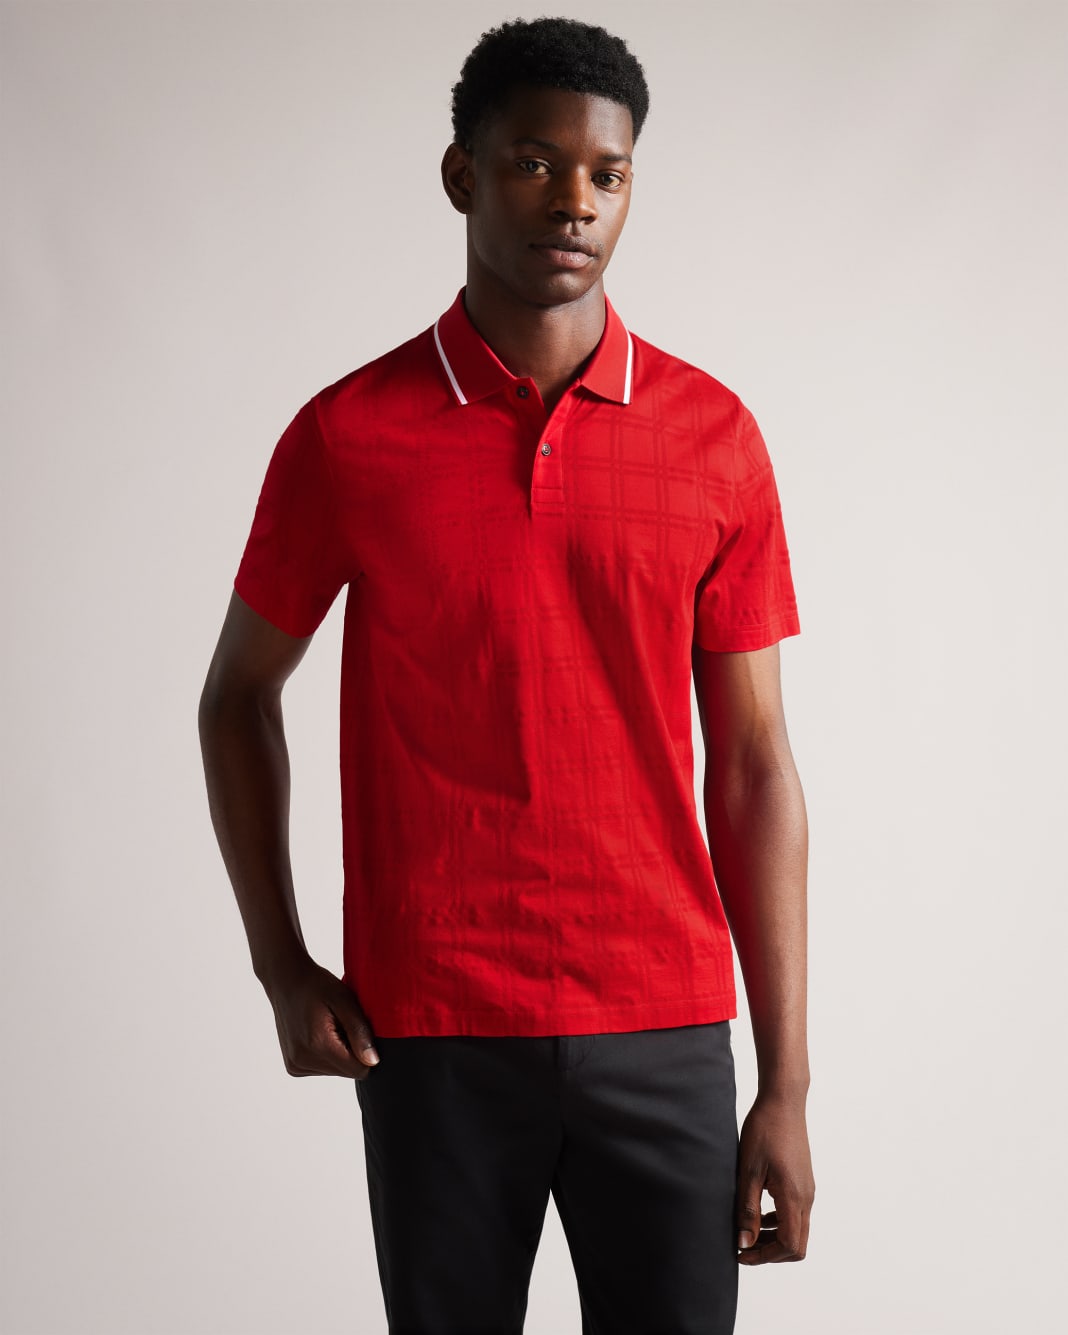 테드 베이커 폴로셔츠 Ted Baker Short Sleeve Shadow Check Polo Shirt,Red